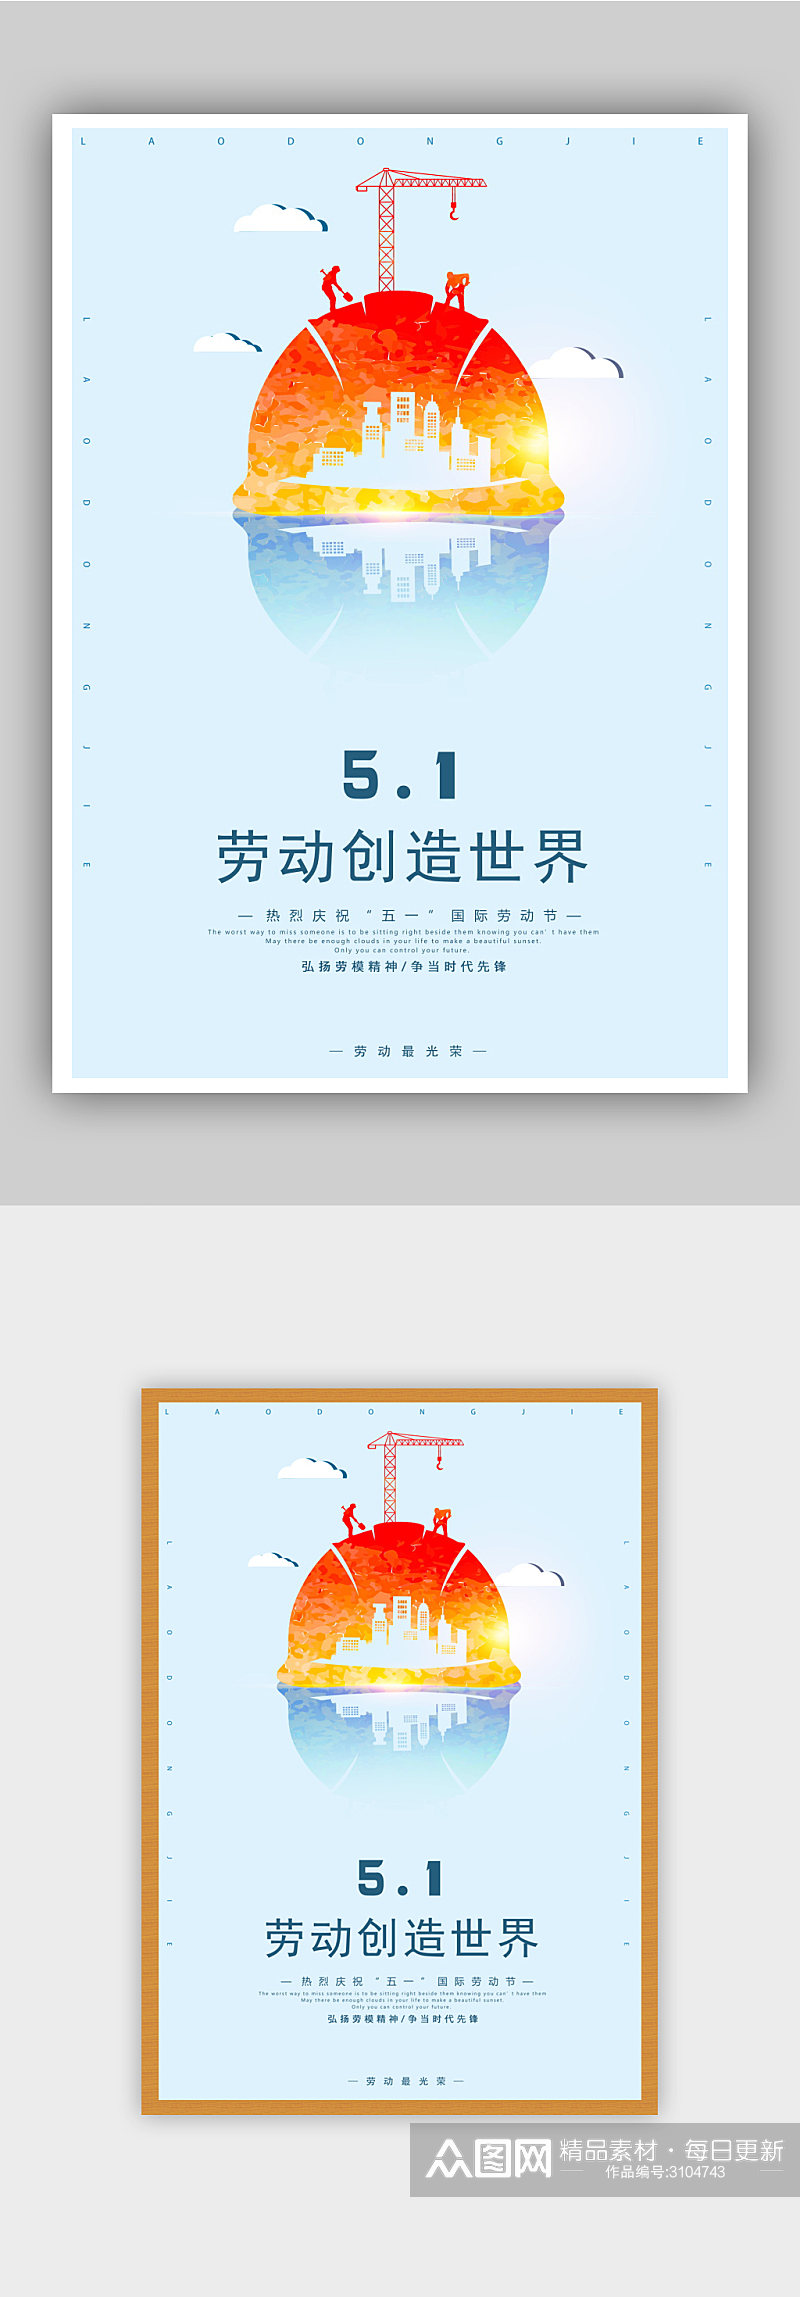 劳动创造世界51劳动节海报模板素材